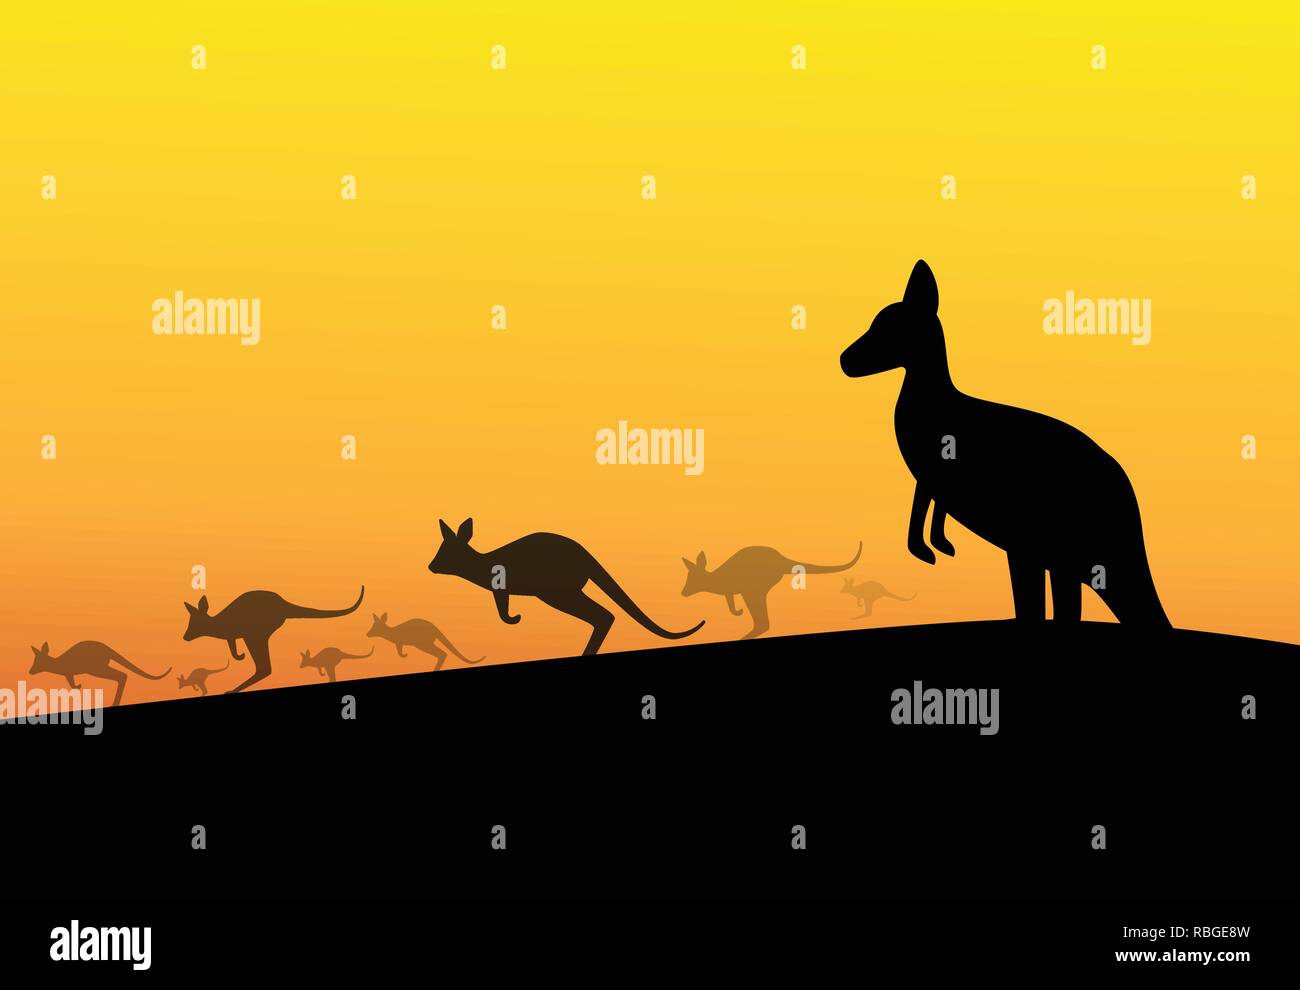 Group of kangaroos in desert, silhouette vector art Stock Vector